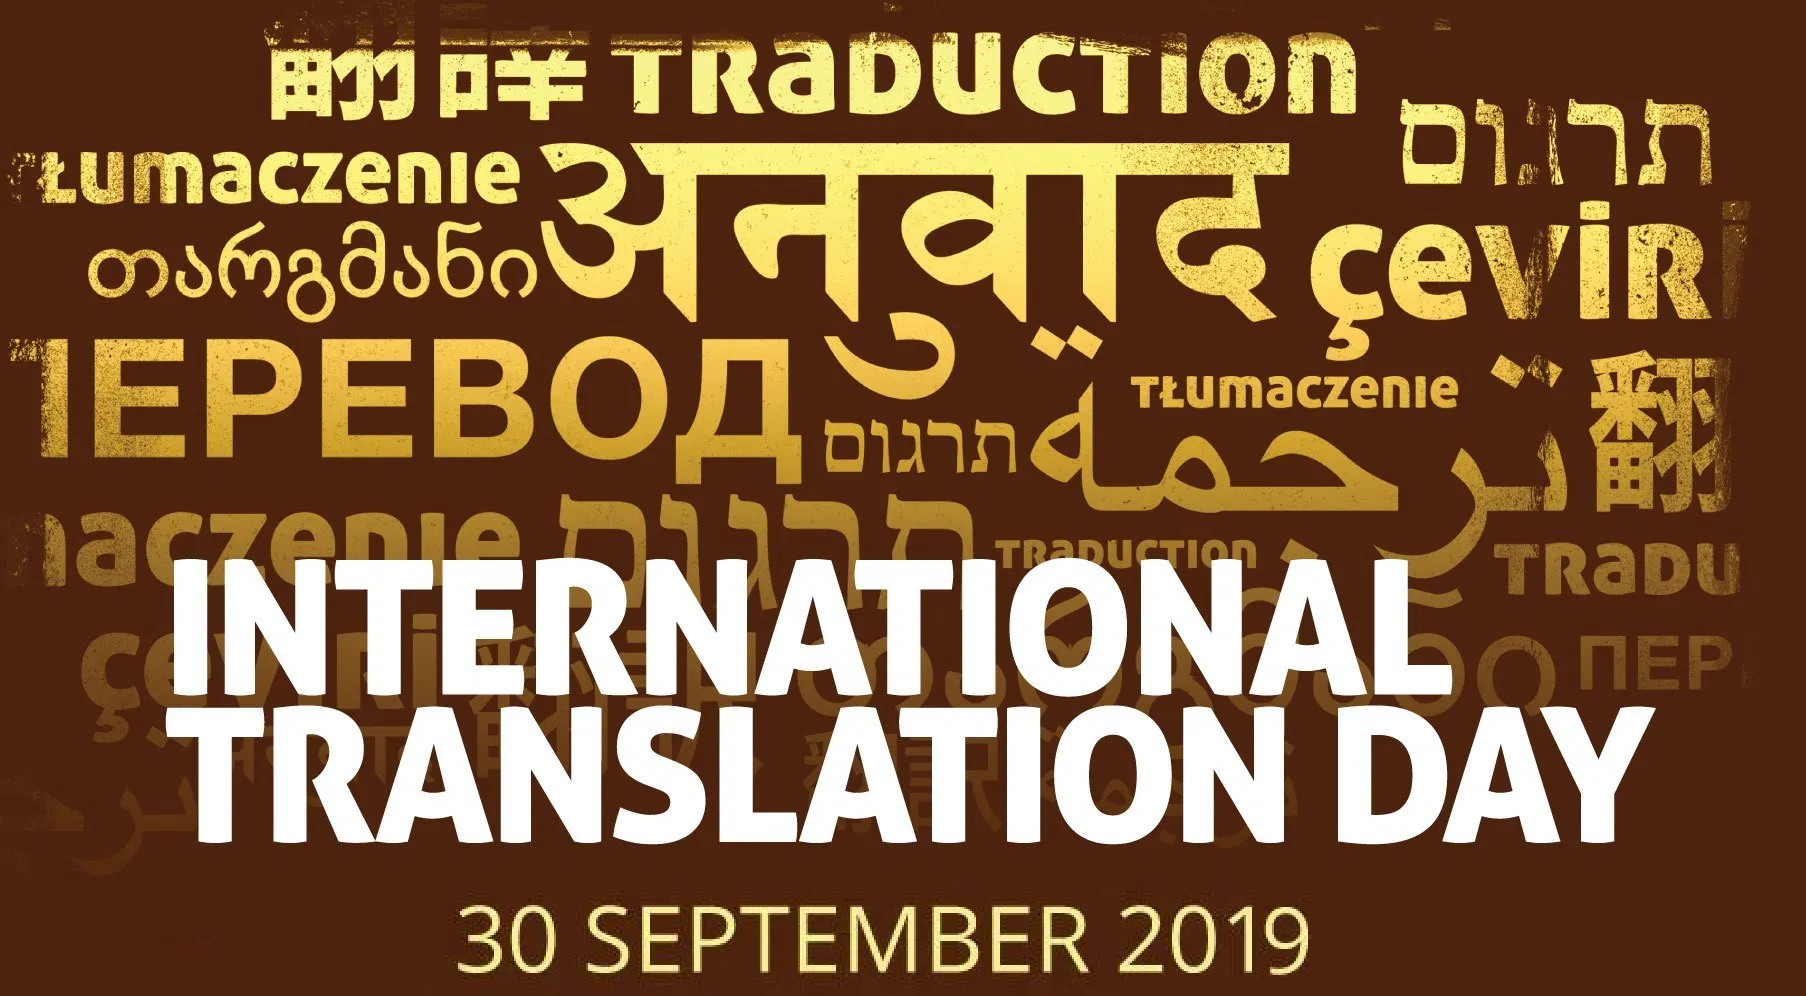 международный день переводчика картинки